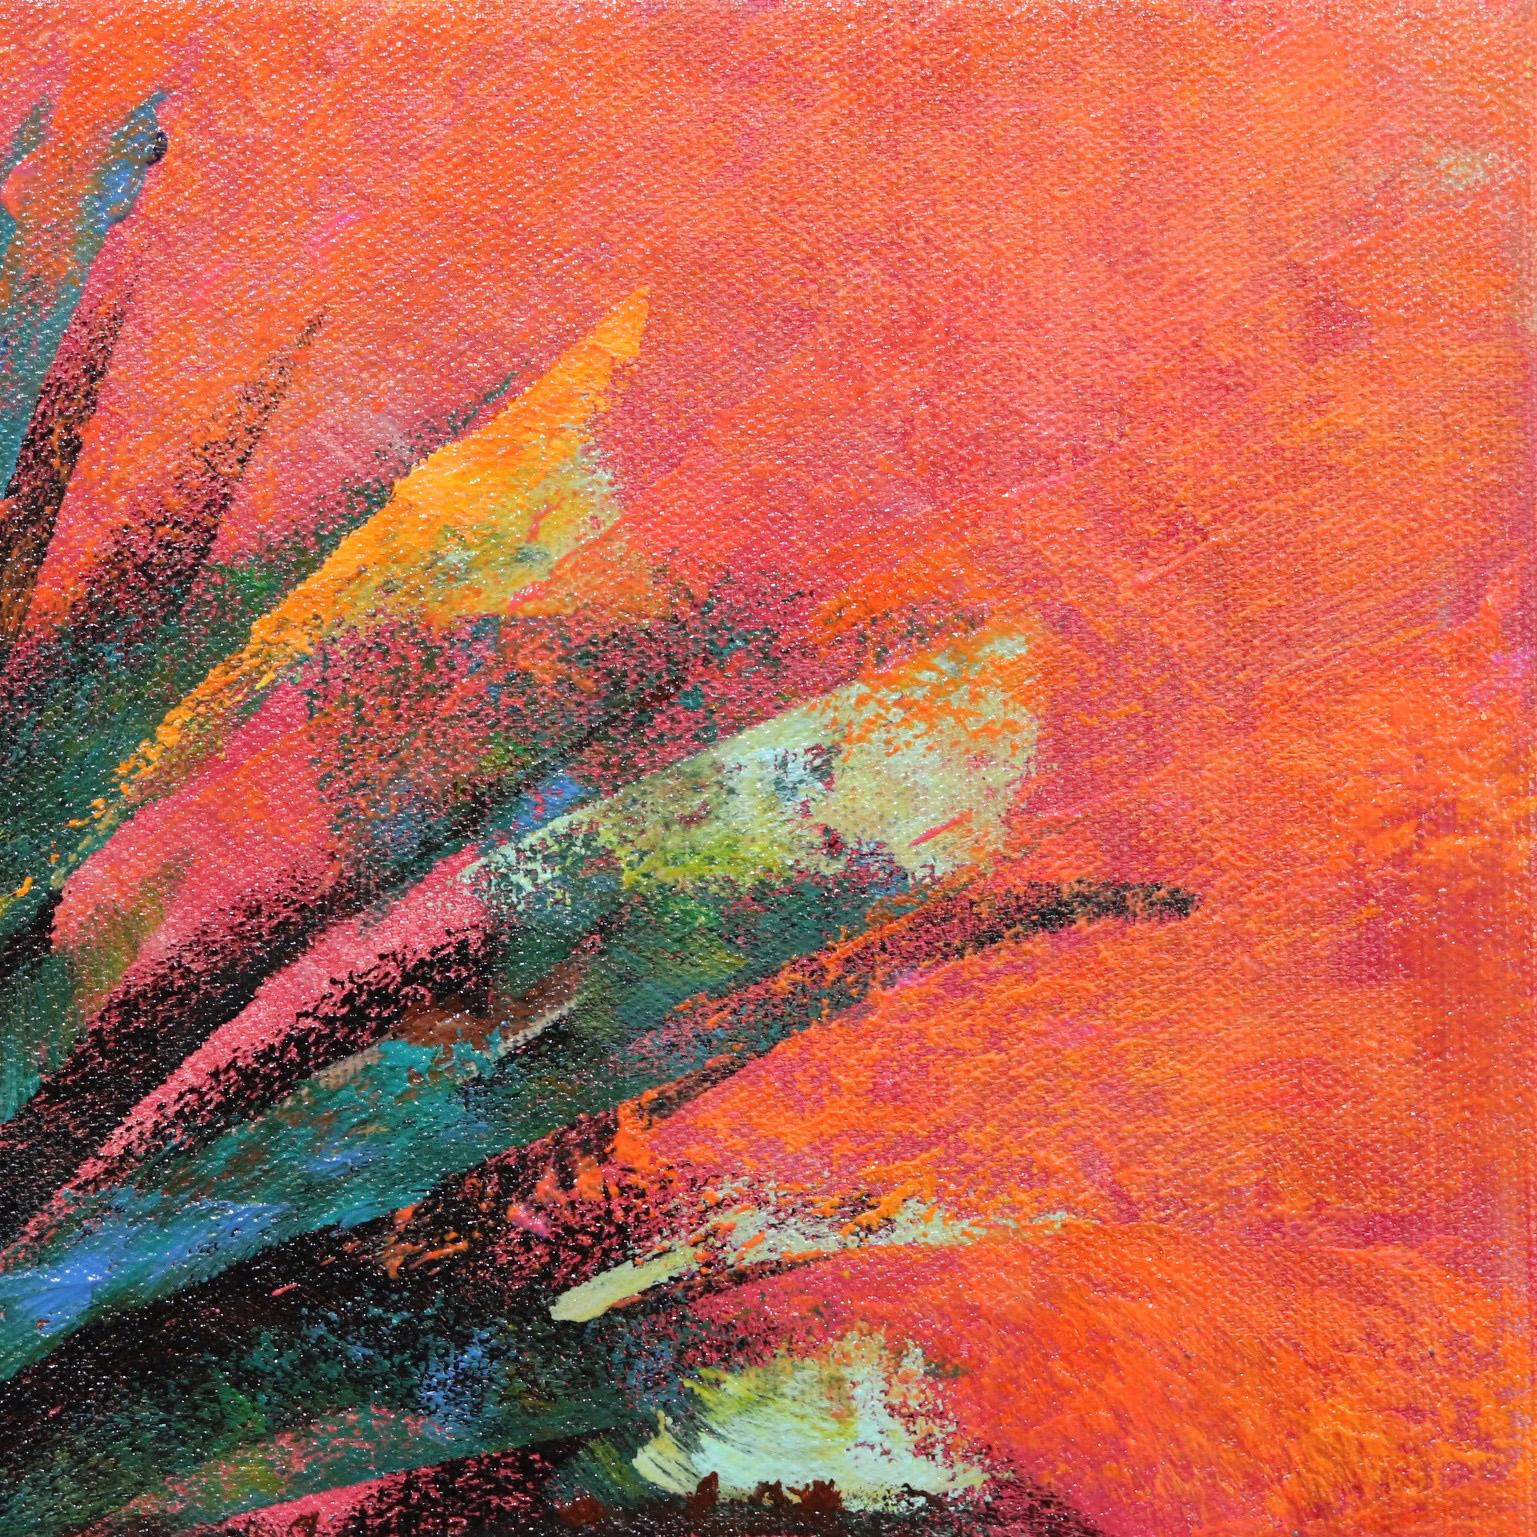 Xanadu Coral - American Impressionist Painting by Kathleen Keifer